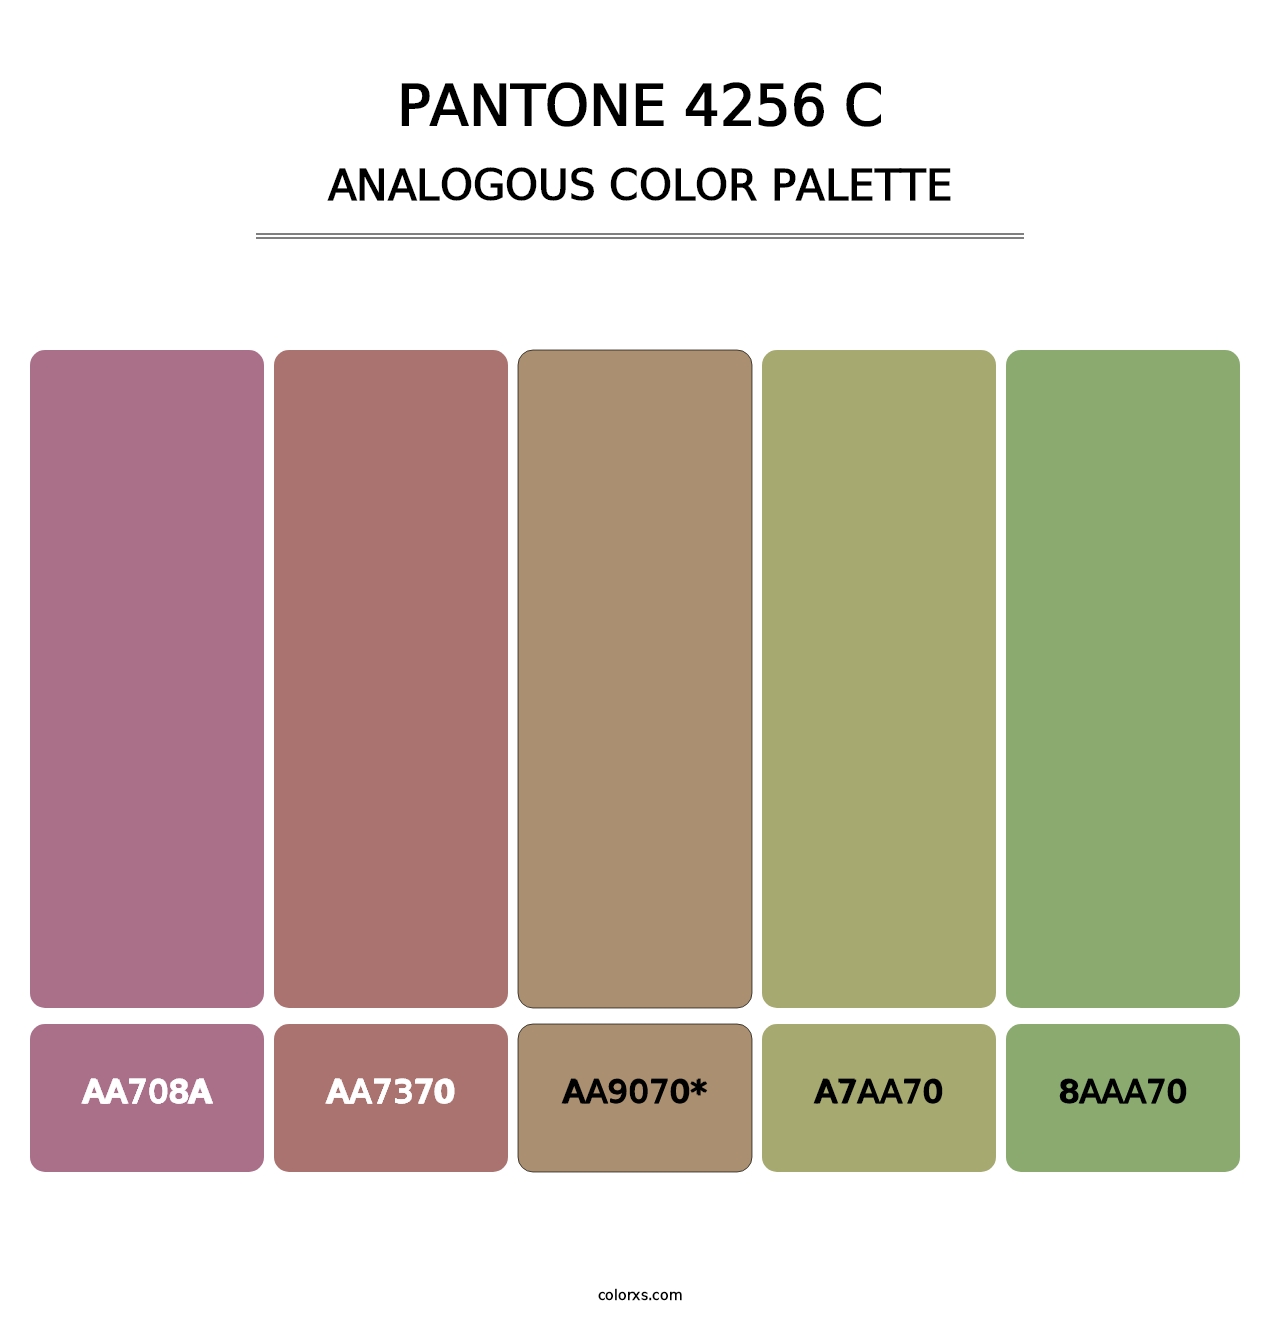 PANTONE 4256 C - Analogous Color Palette